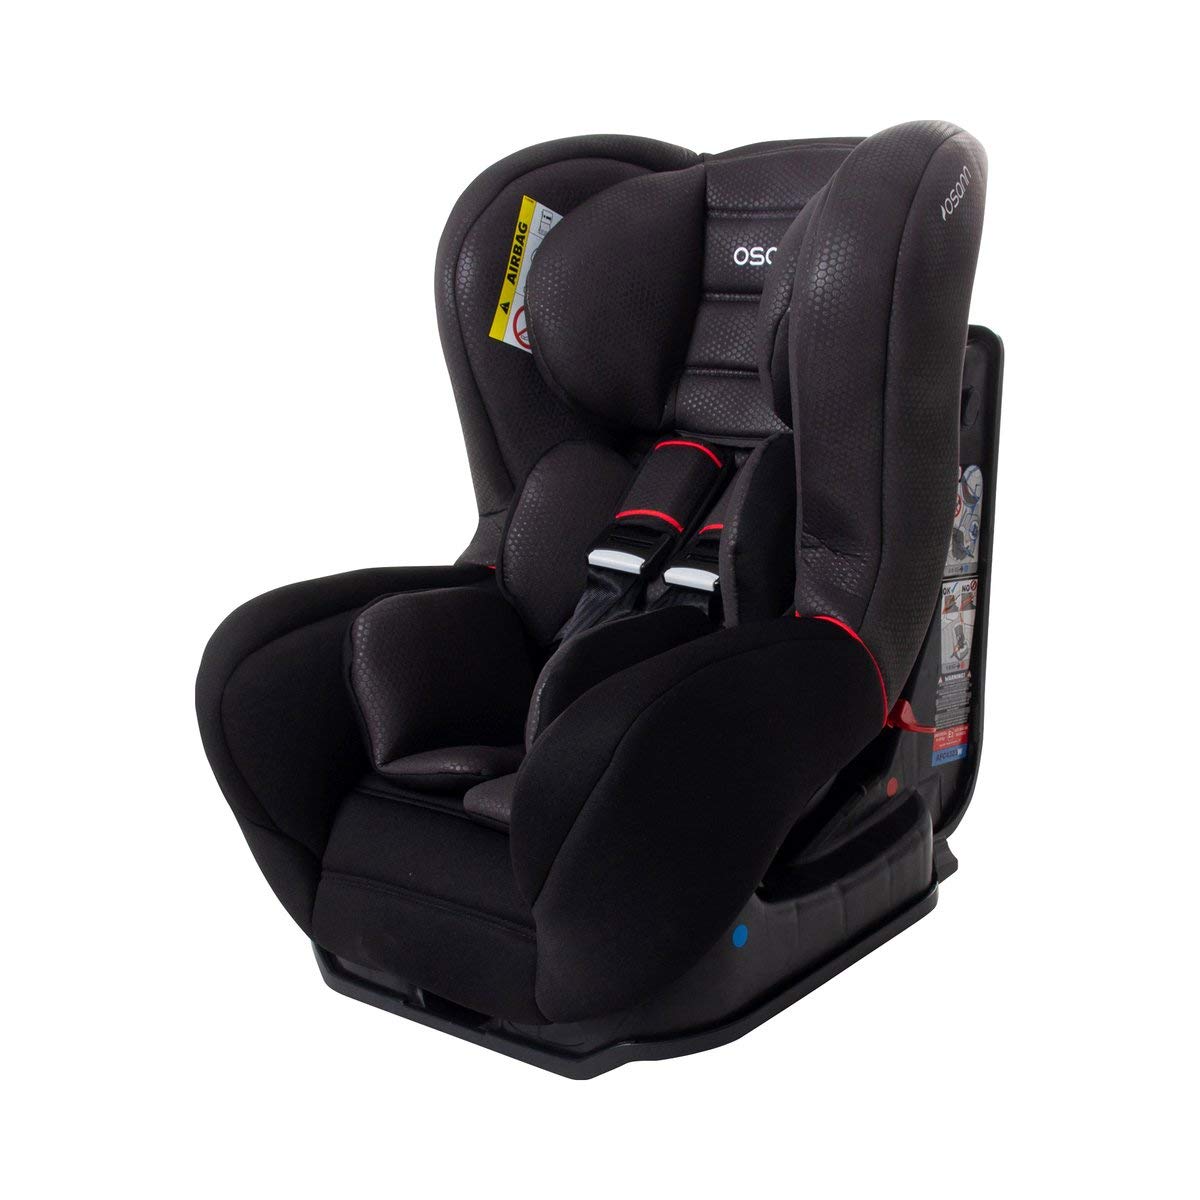 SafetyOne Child Seat black